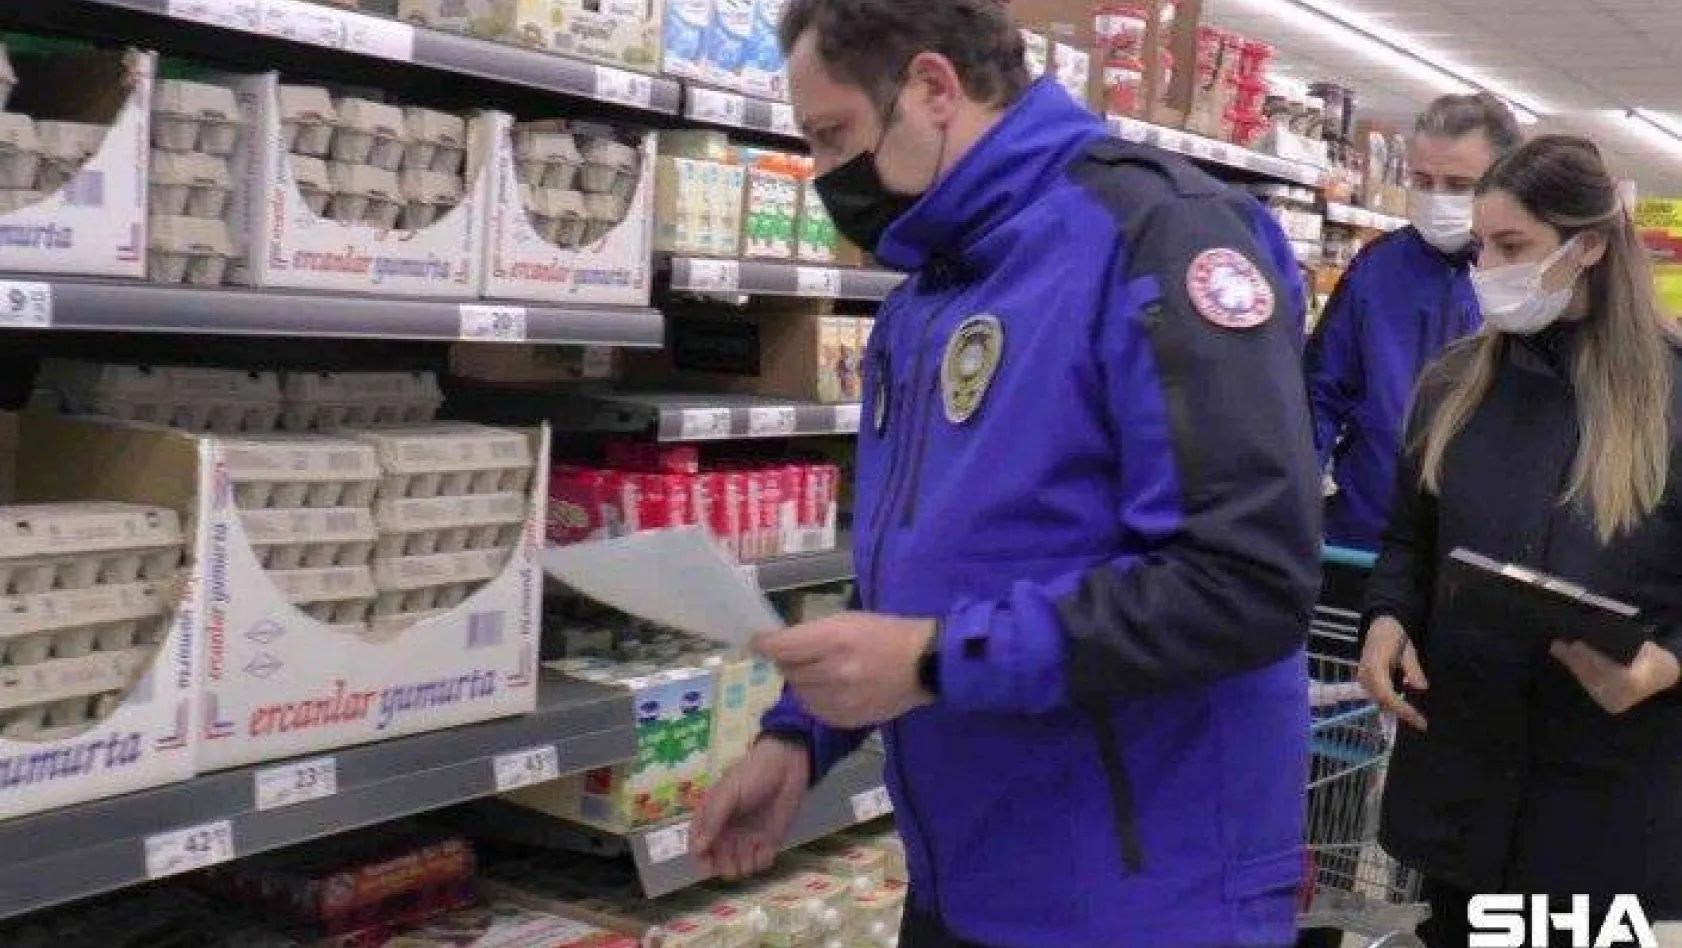 Çekmeköy'de, KDV denetiminde markete ceza yağdı